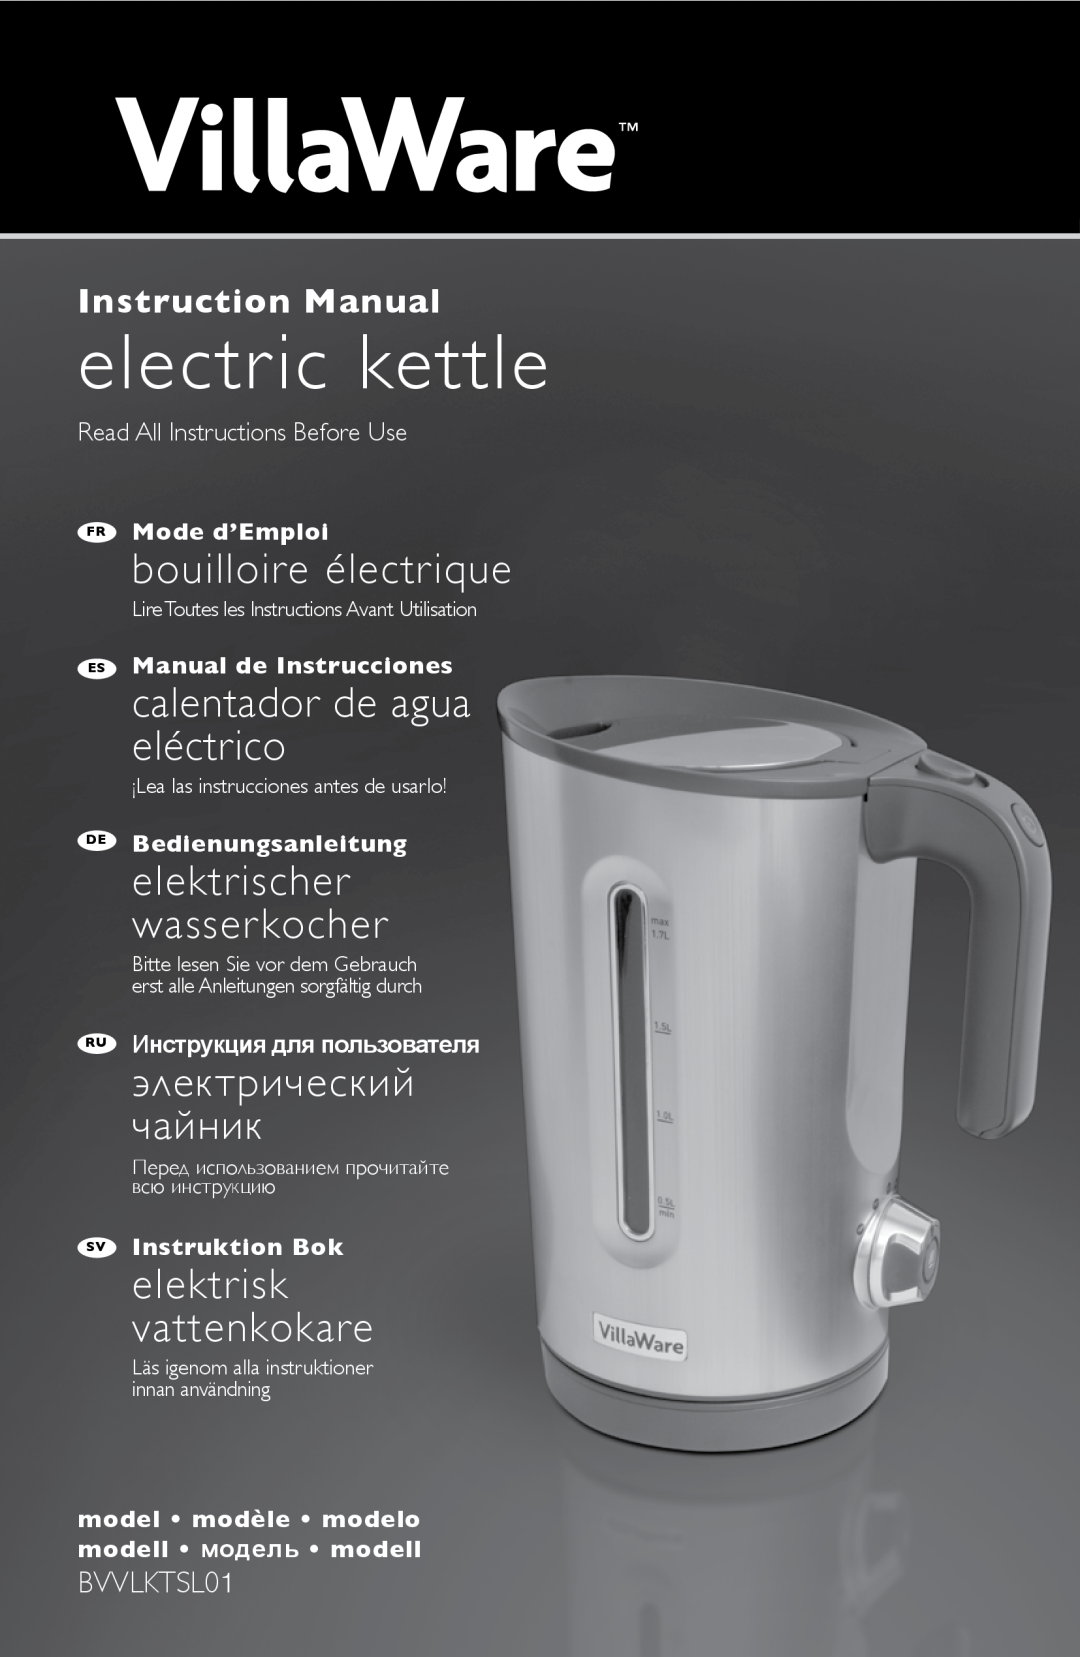 Villaware BVVLKTSL01 instruction manual Read All Instructions Before Use, electric kettle, bouilloire électrique 